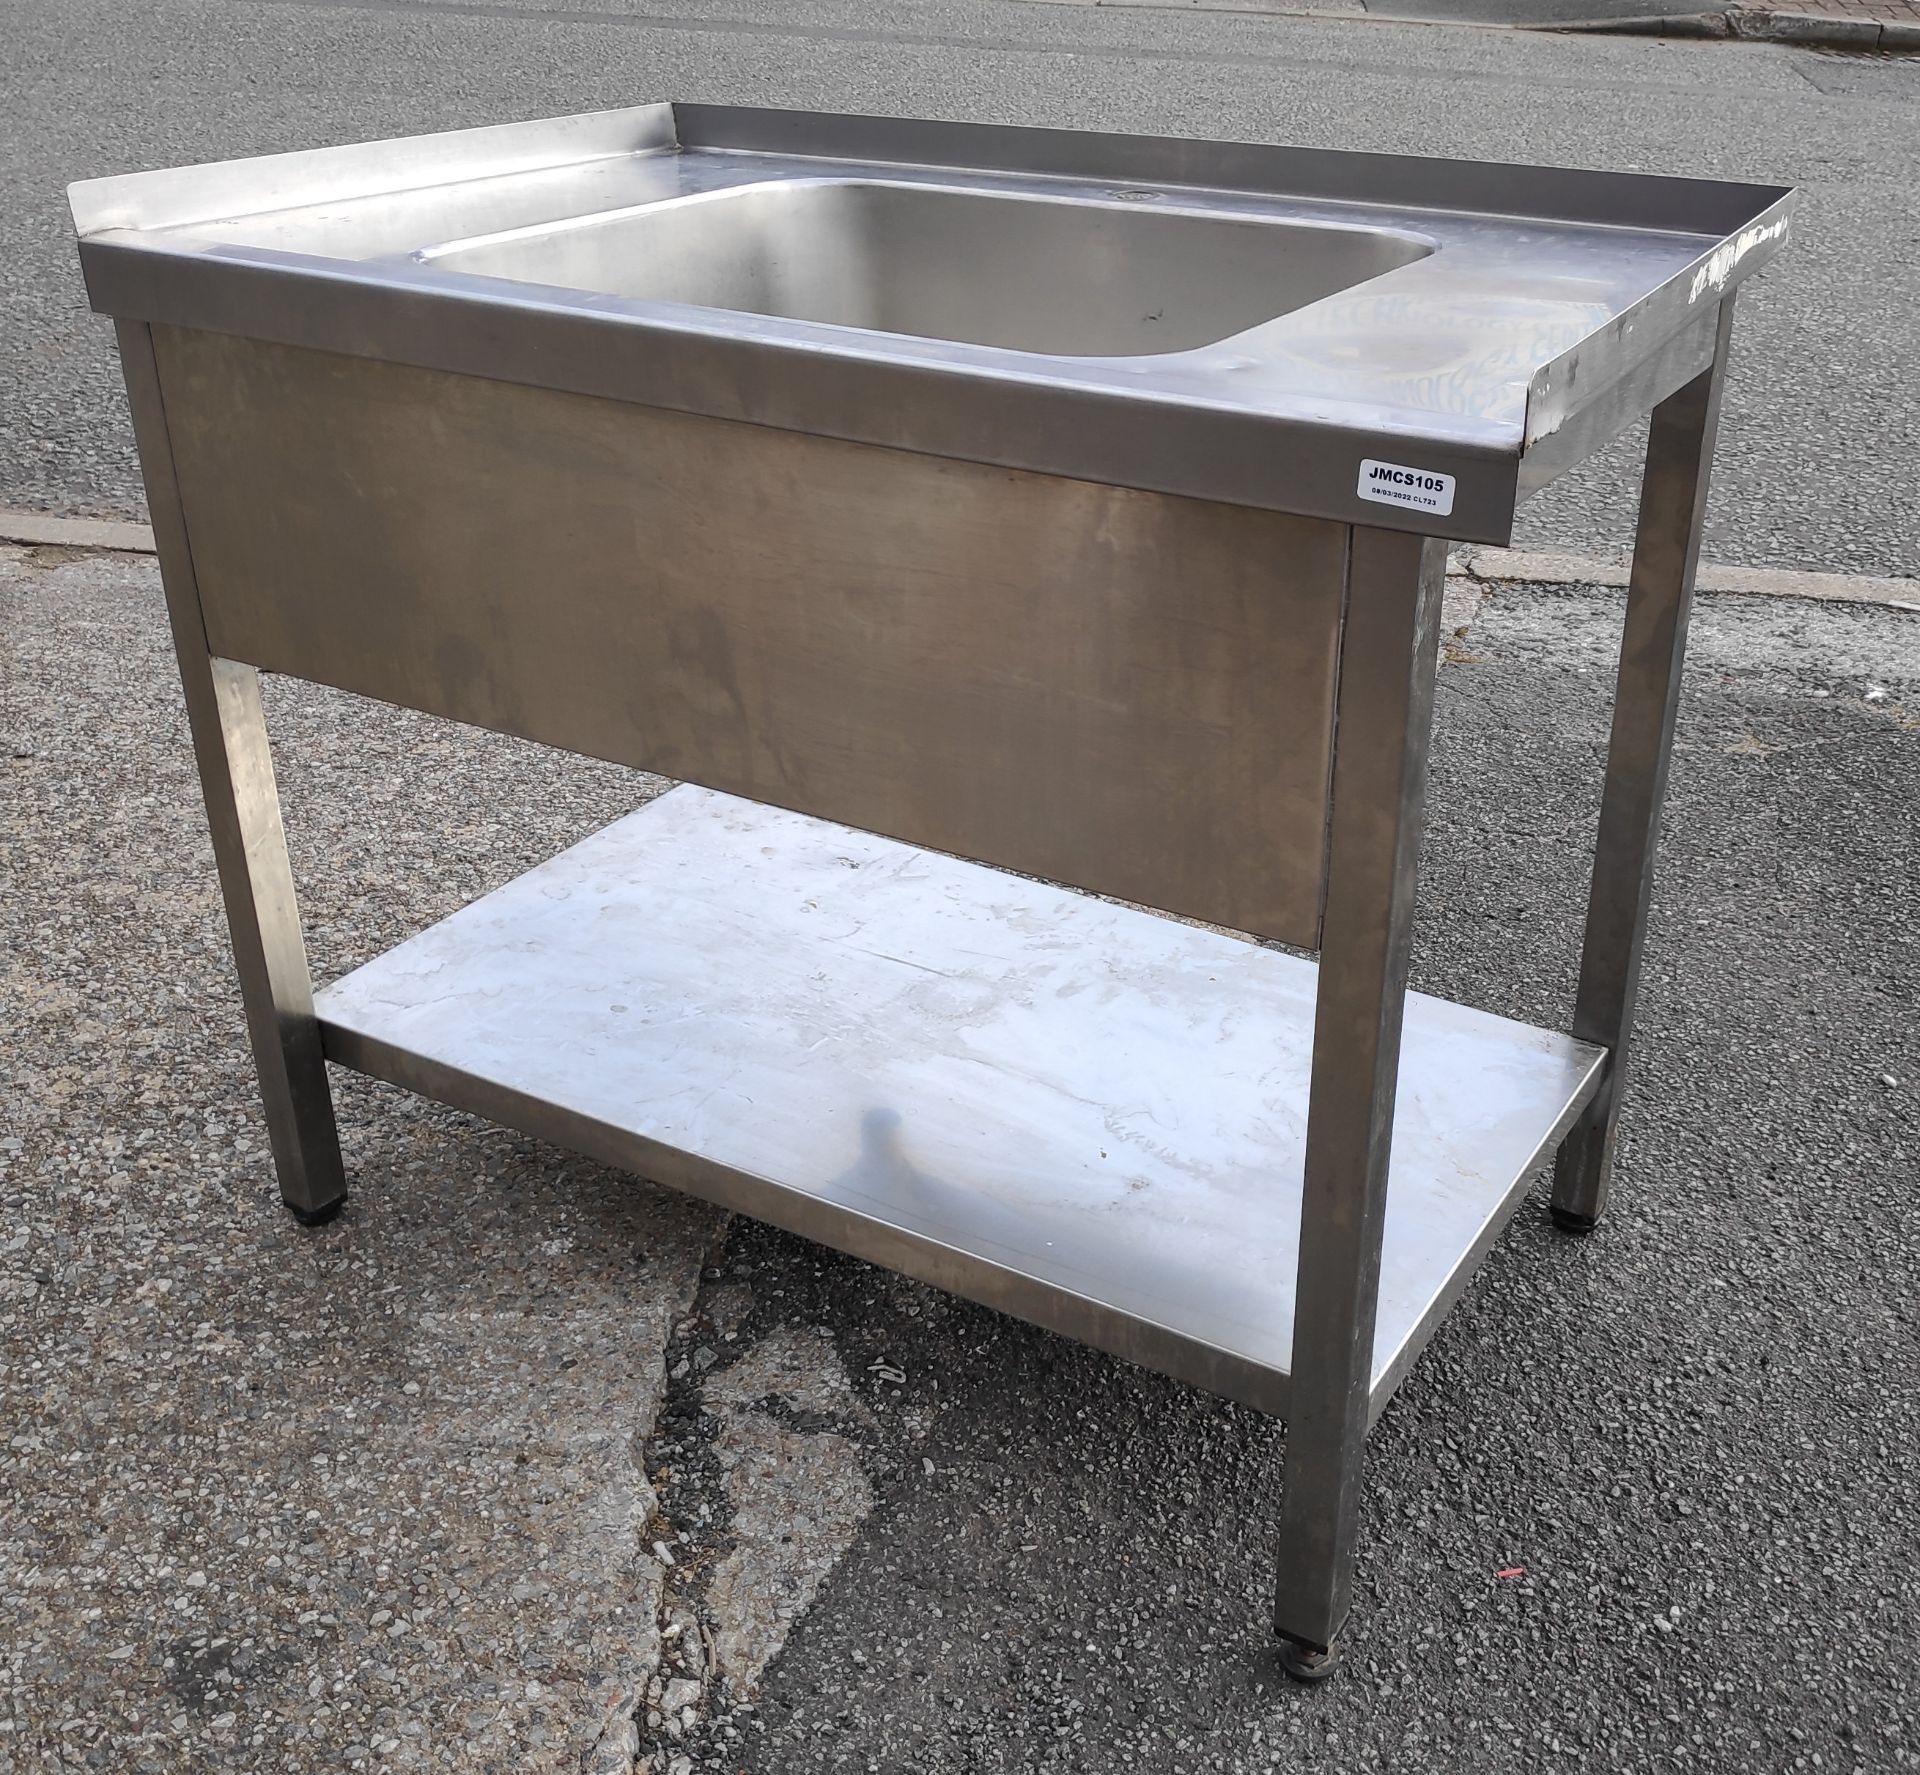 1 x Large Stainless Steel Single Bowl Sink Unit - 105.5cm (L) x 65cm (D) x 91.5cm (H) - JMCS105 - - Image 2 of 6